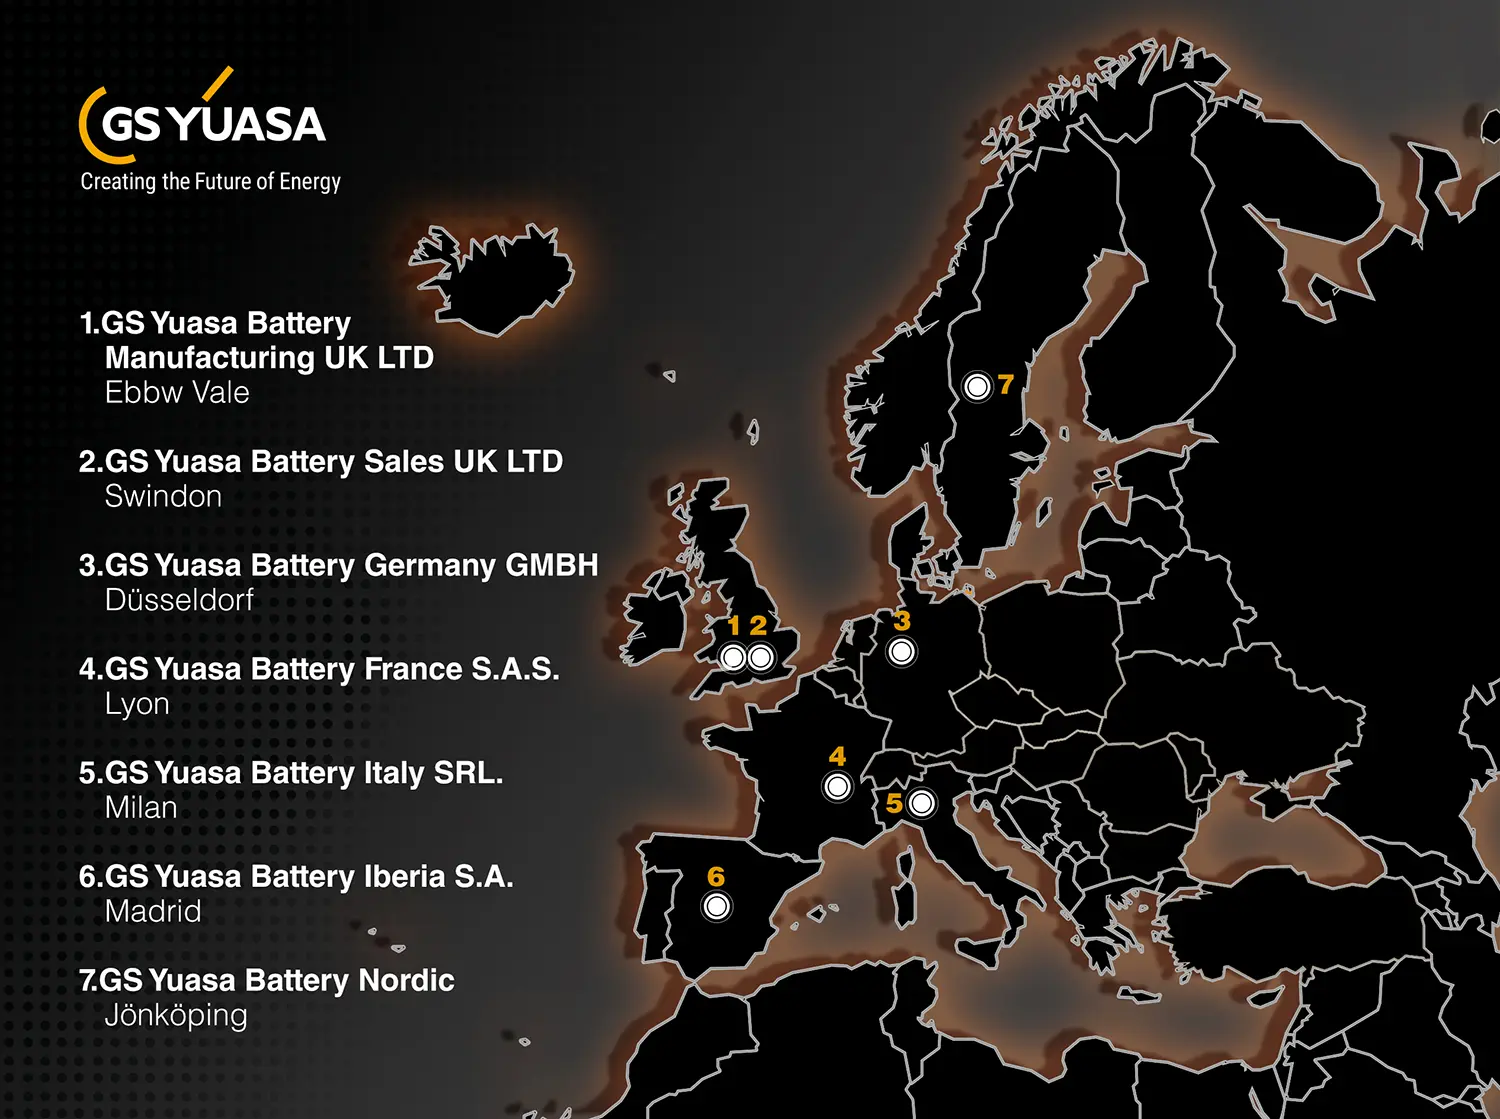 catalogo de baterias yuasa para motos - Quién fabrica las baterías Yuasa